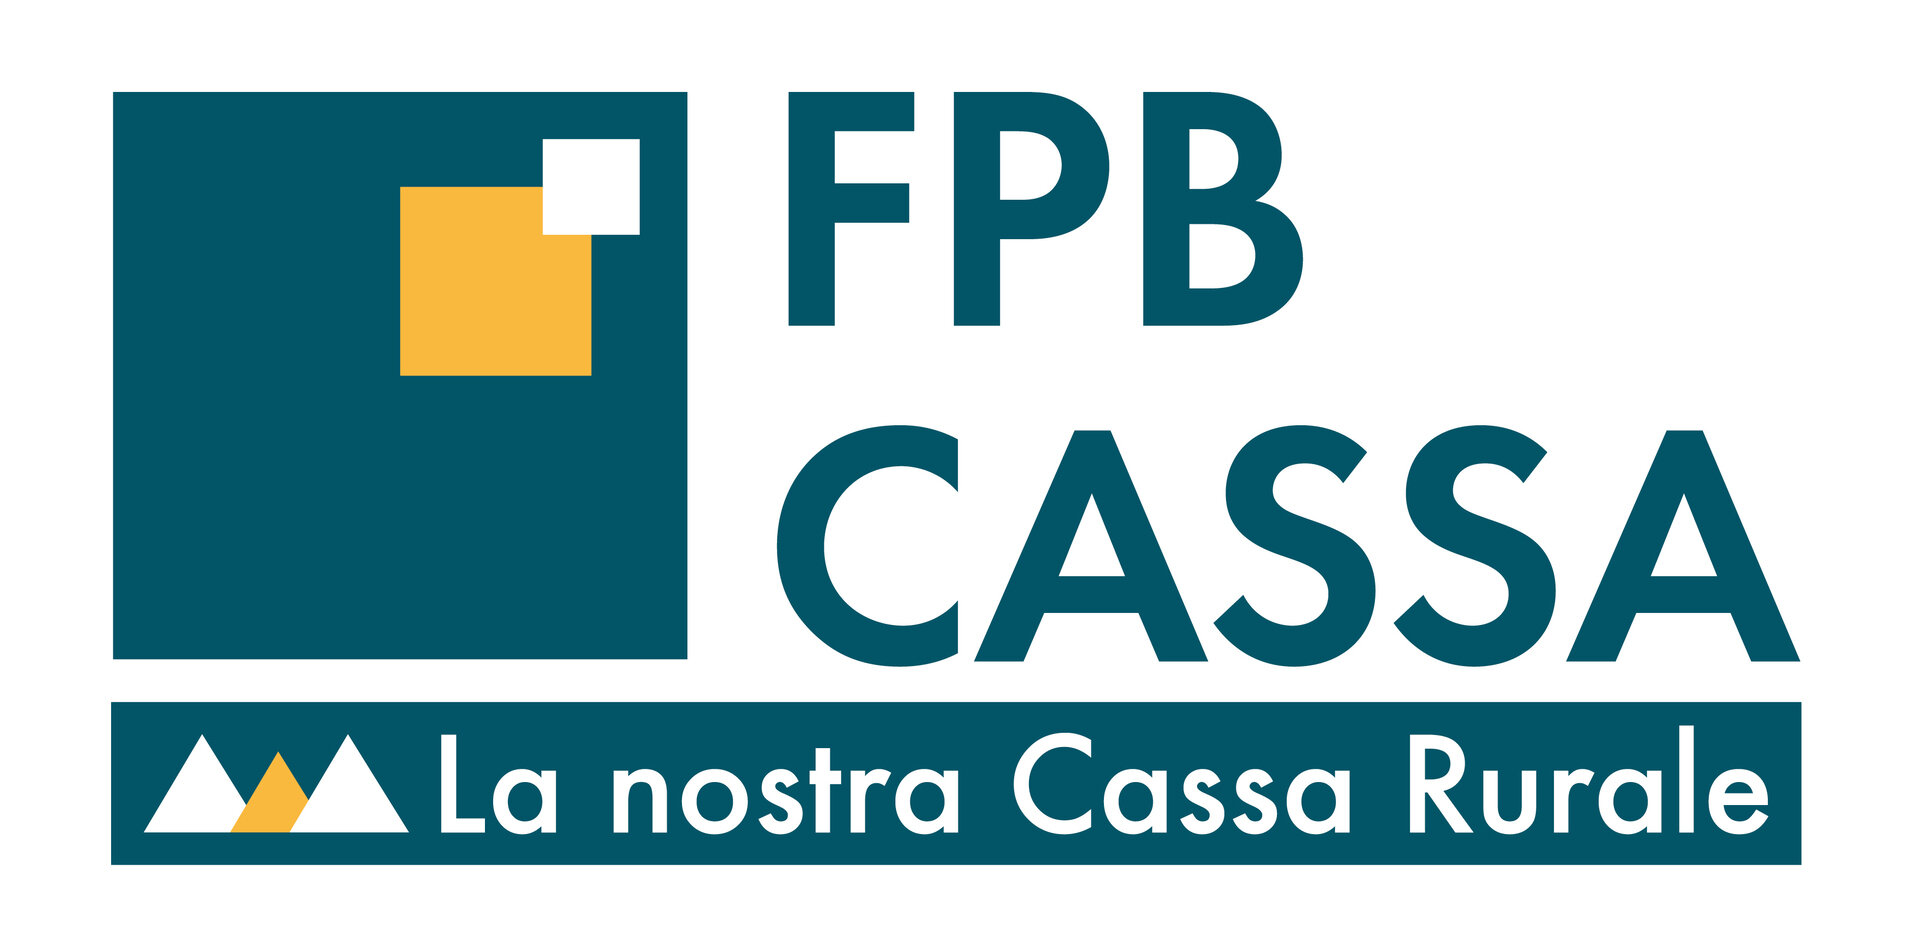 FPB Cassa Di Fassa Primiero Belluno   Filiale Di Vigo Di Fassa